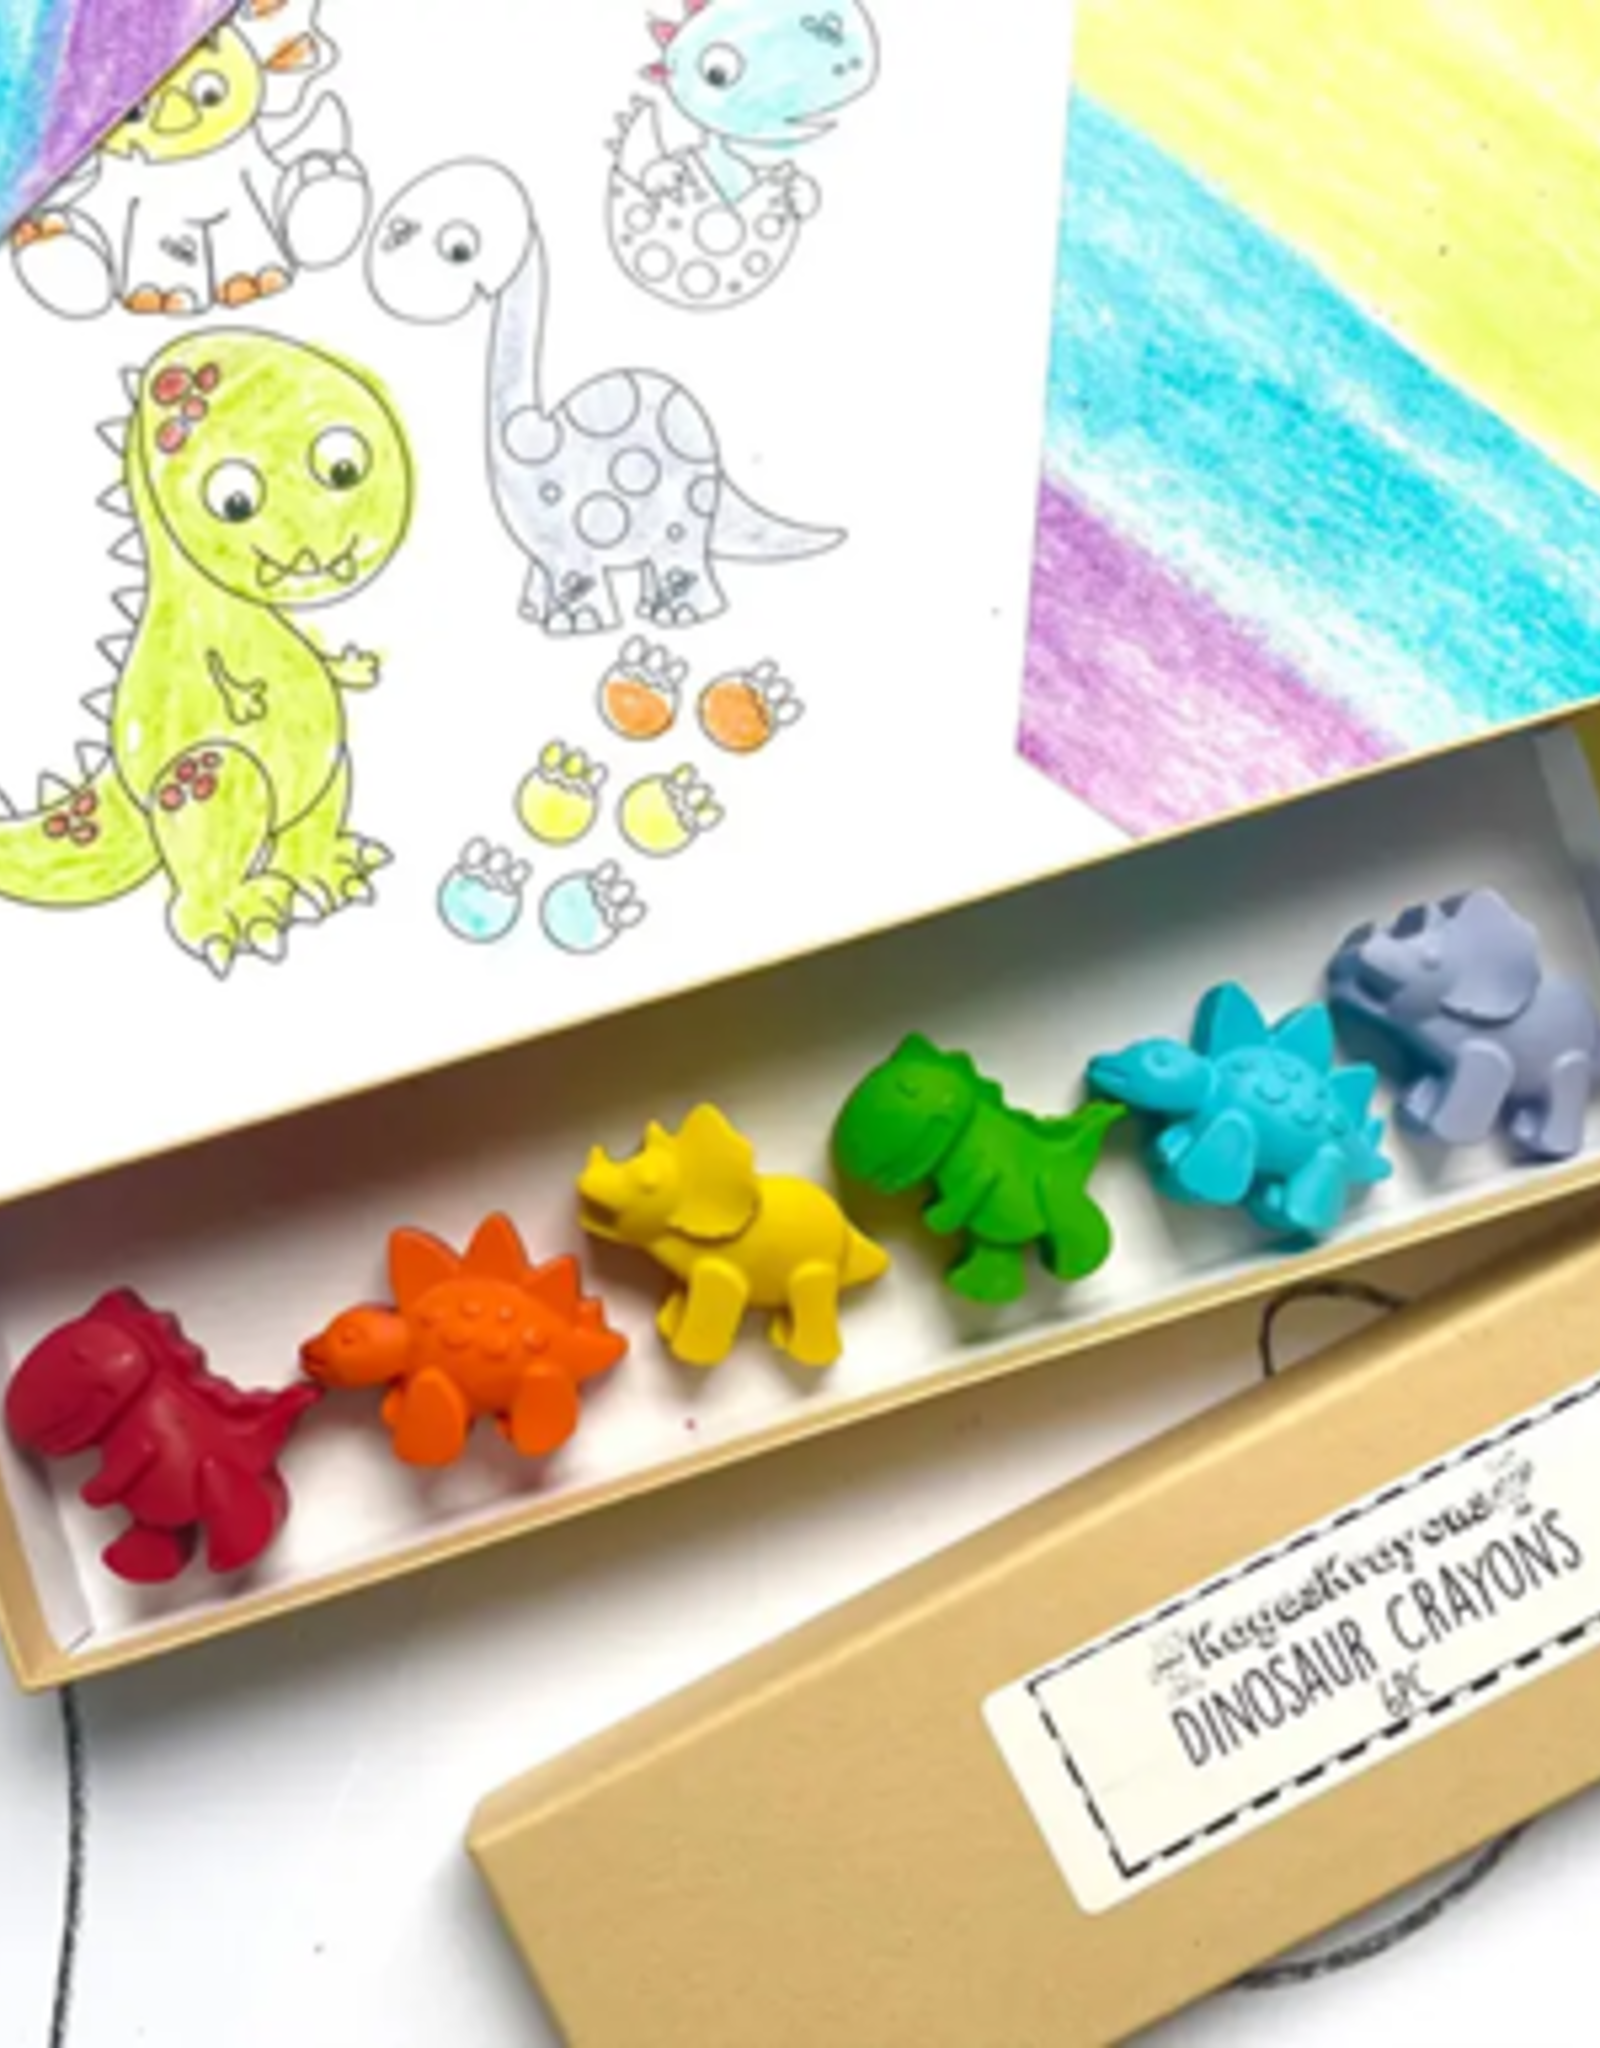 KagesKrayons Dinosaur Crayons Gift Box